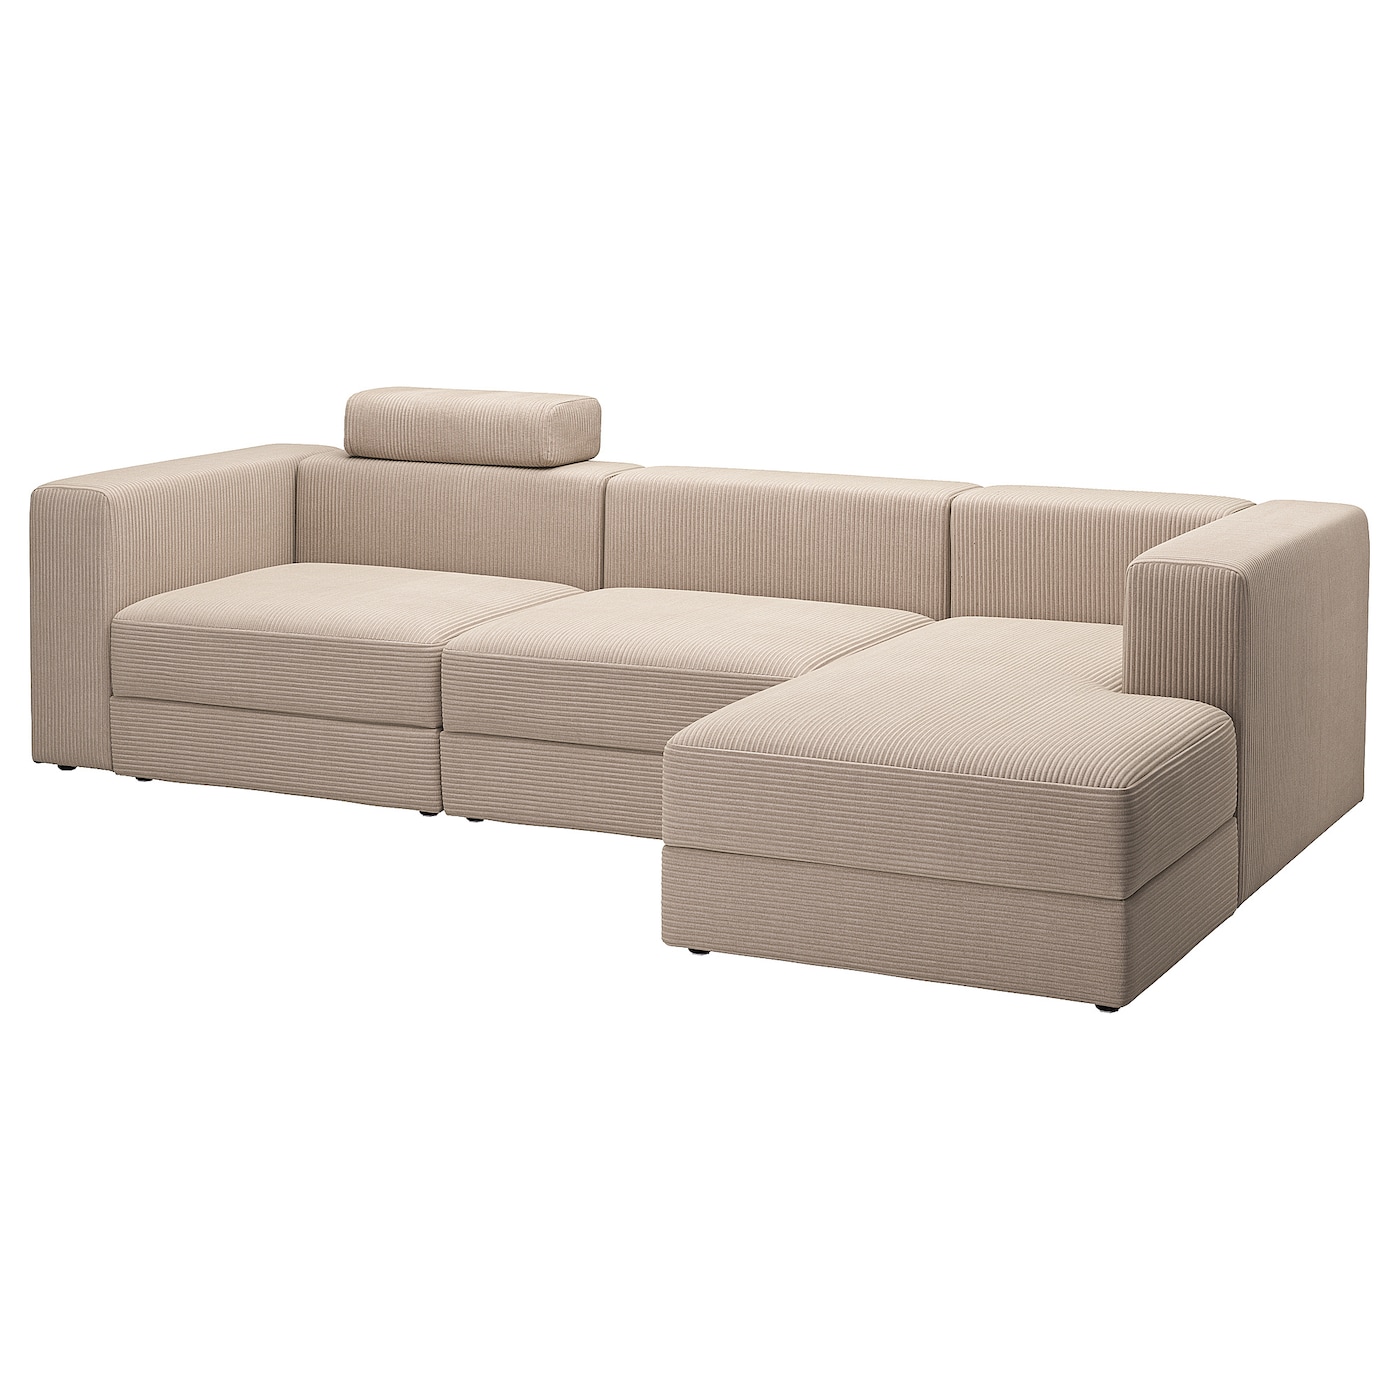 ДЖЭТТЕБО 4-местный диван+диван правый с подголовником/Самсала серо-бежевый JÄTTEBO IKEA